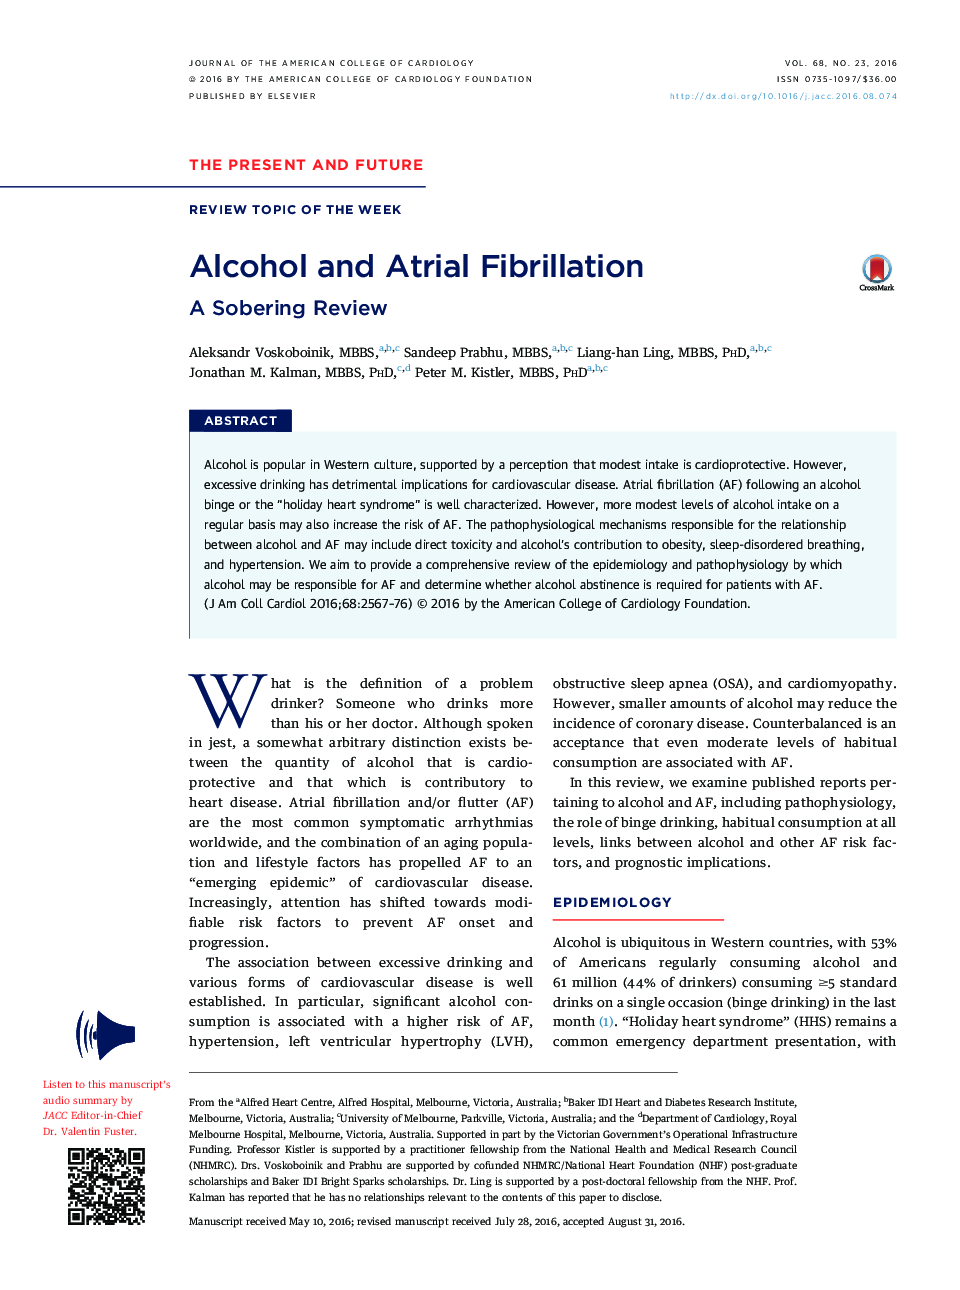 Alcohol and Atrial Fibrillation